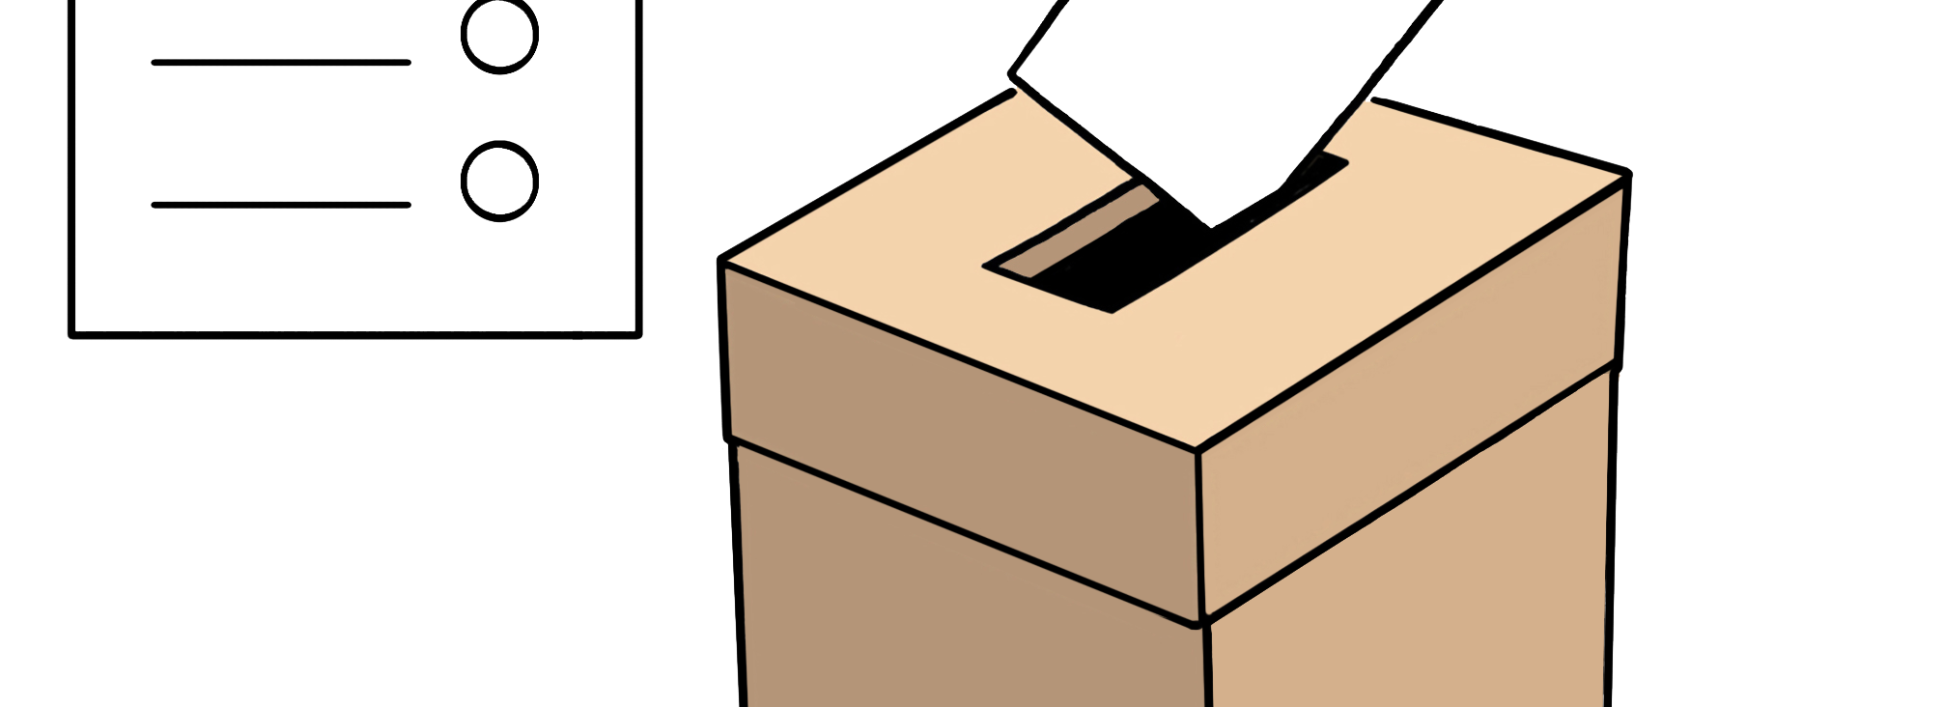 Das BIld zeigt eine Wahlurne und einen Wahlzettel.